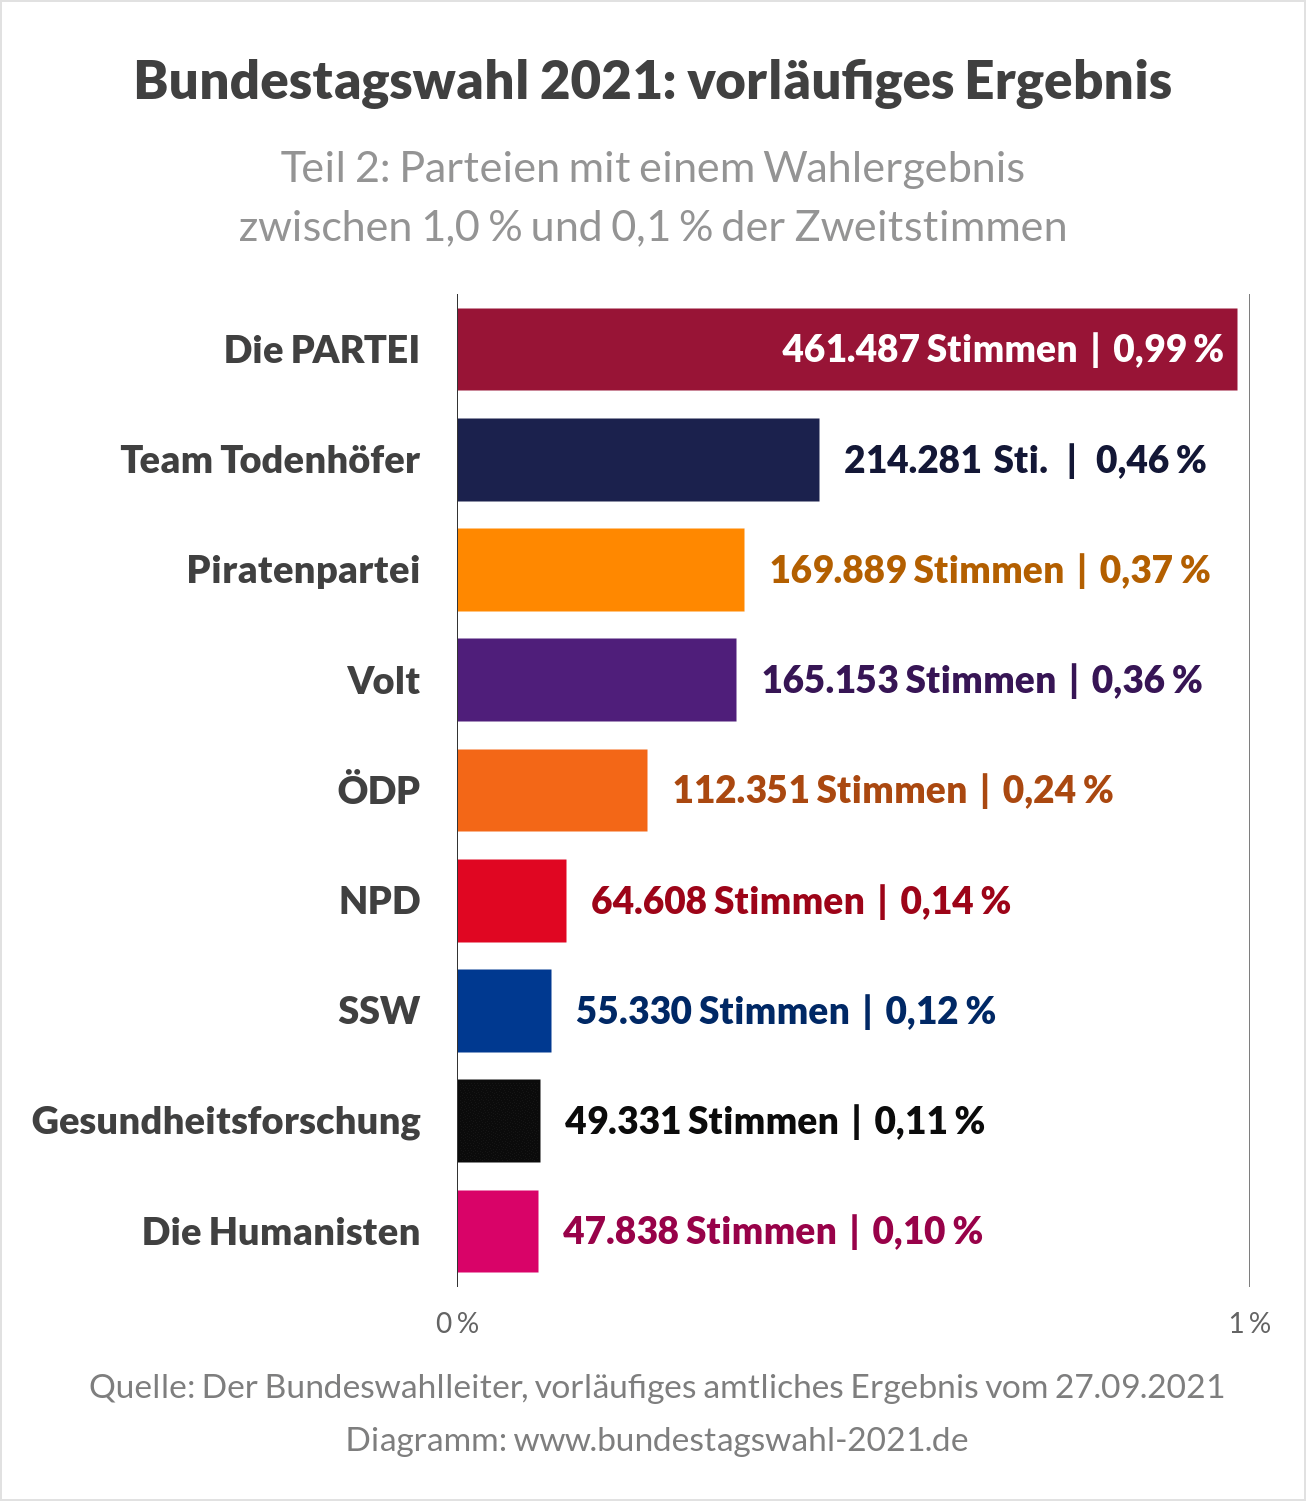 Bundestagswahl 2021 - Ergebnis (Teil 2, Kleinparteien u. a. Die PARTEI, Team Todenhöfer, Piraten, Volt, ÖDP)